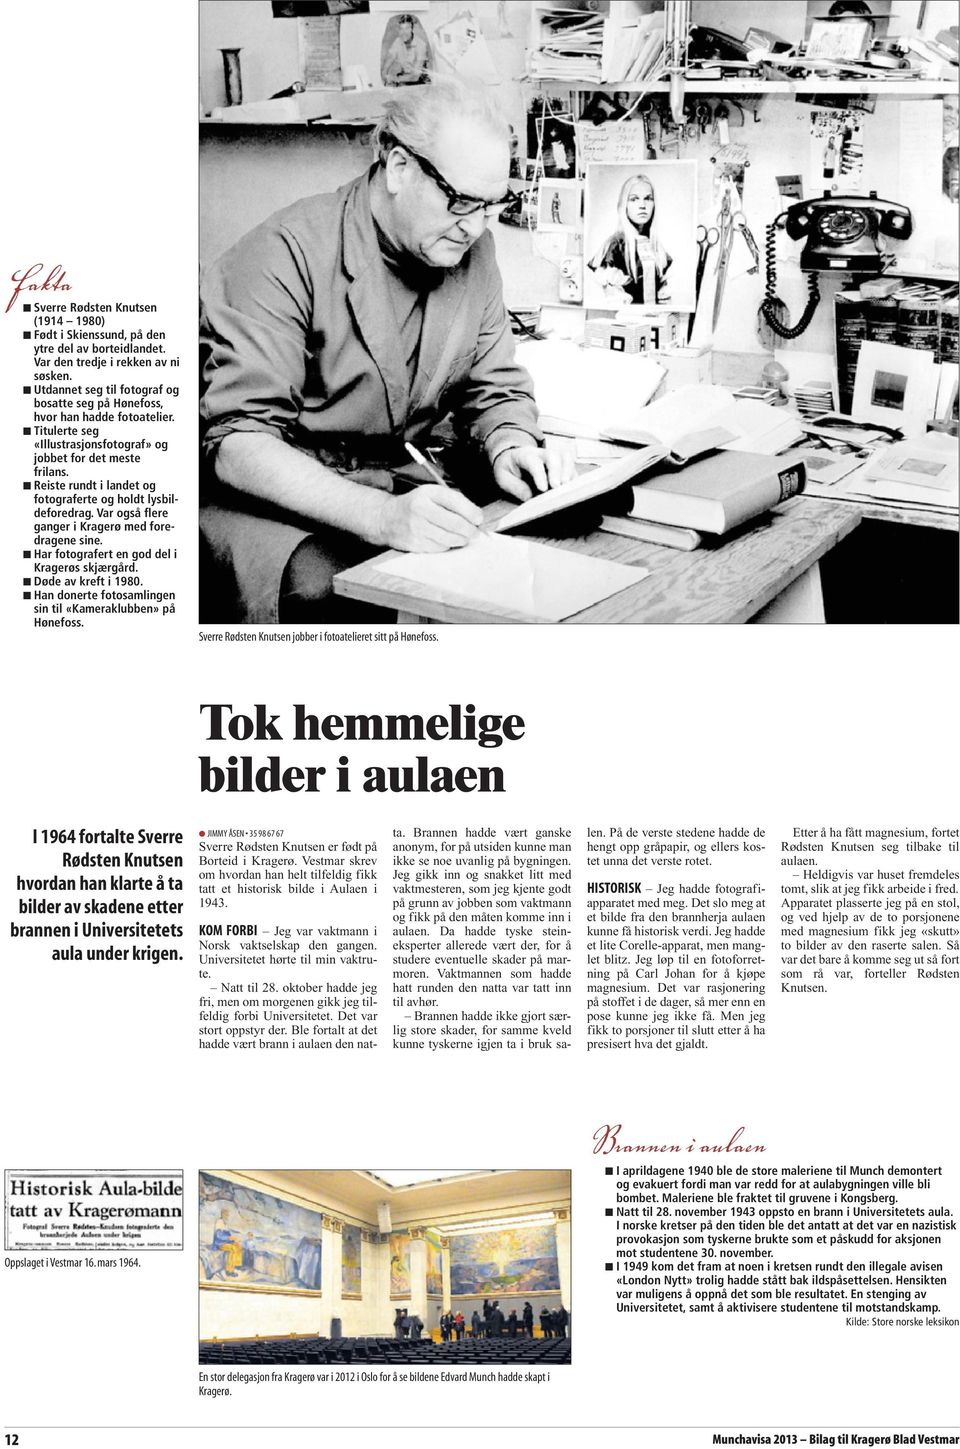 Reiste rundt i landet og fotograferte og holdt lysbildeforedrag. Var også flere ganger i Kragerø med foredragene sine. Har fotografert en god del i Kragerøs skjærgård. Døde av kreft i 1980.